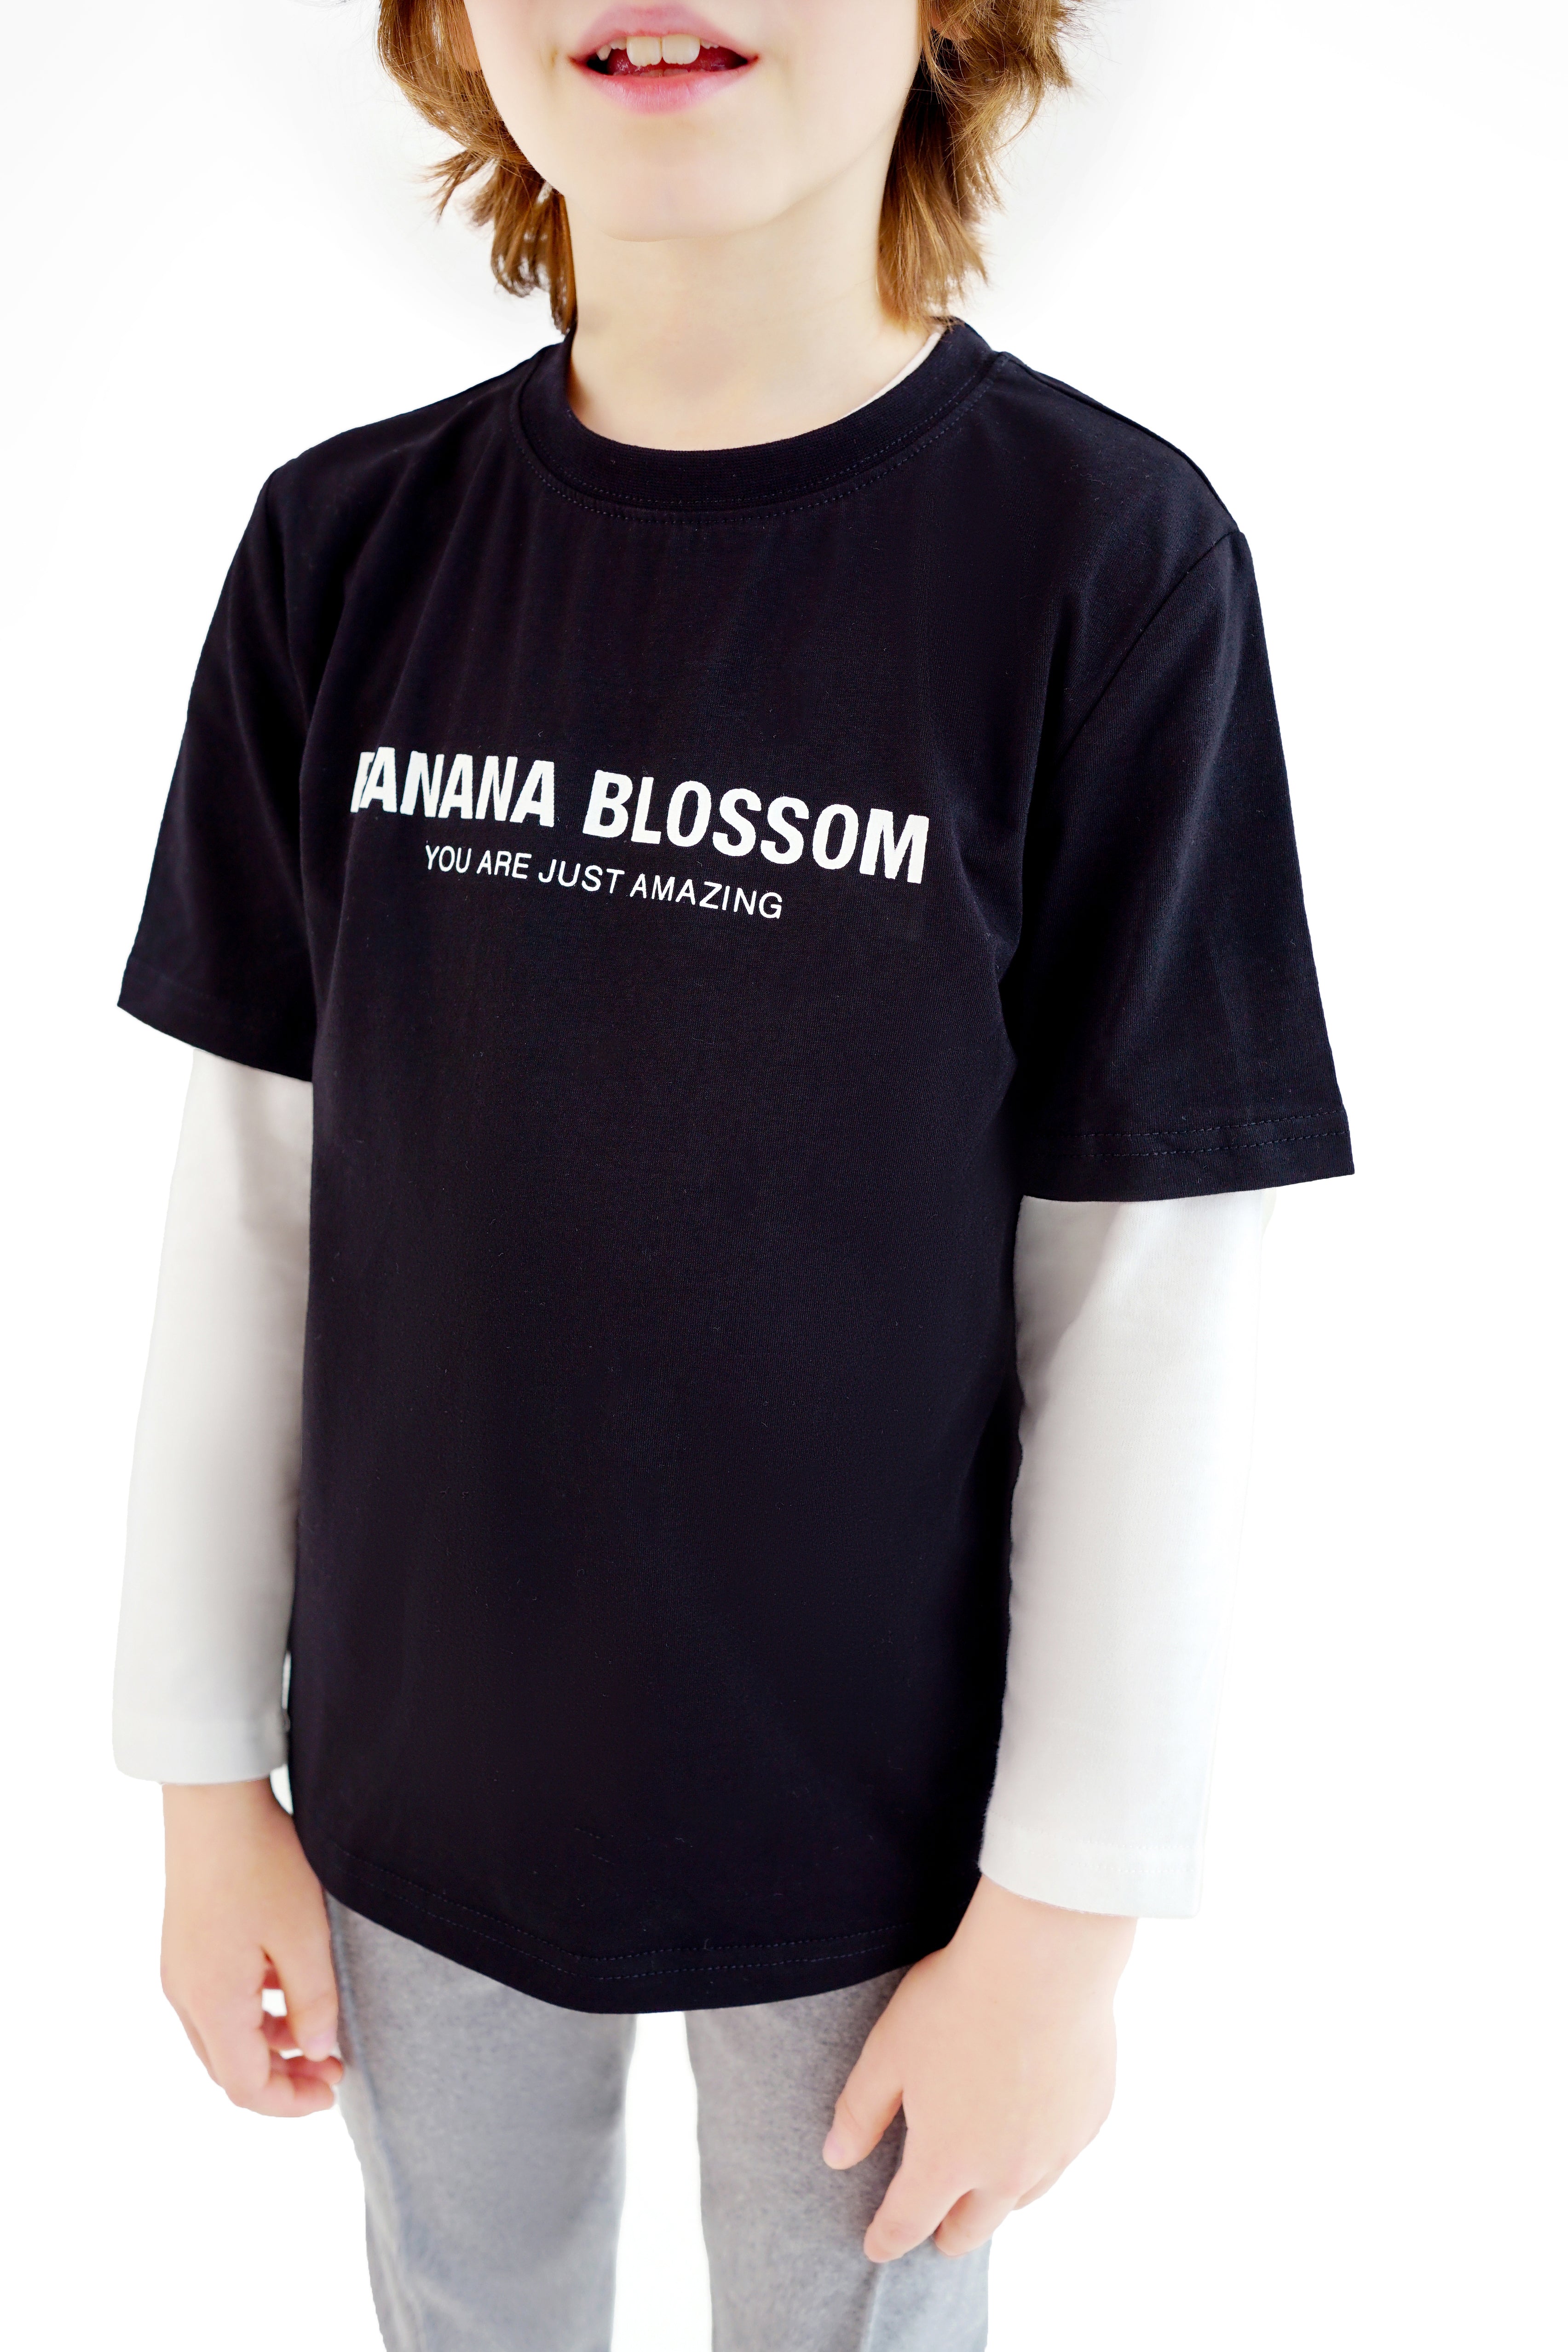 Banana Blossom T 恤 黑色